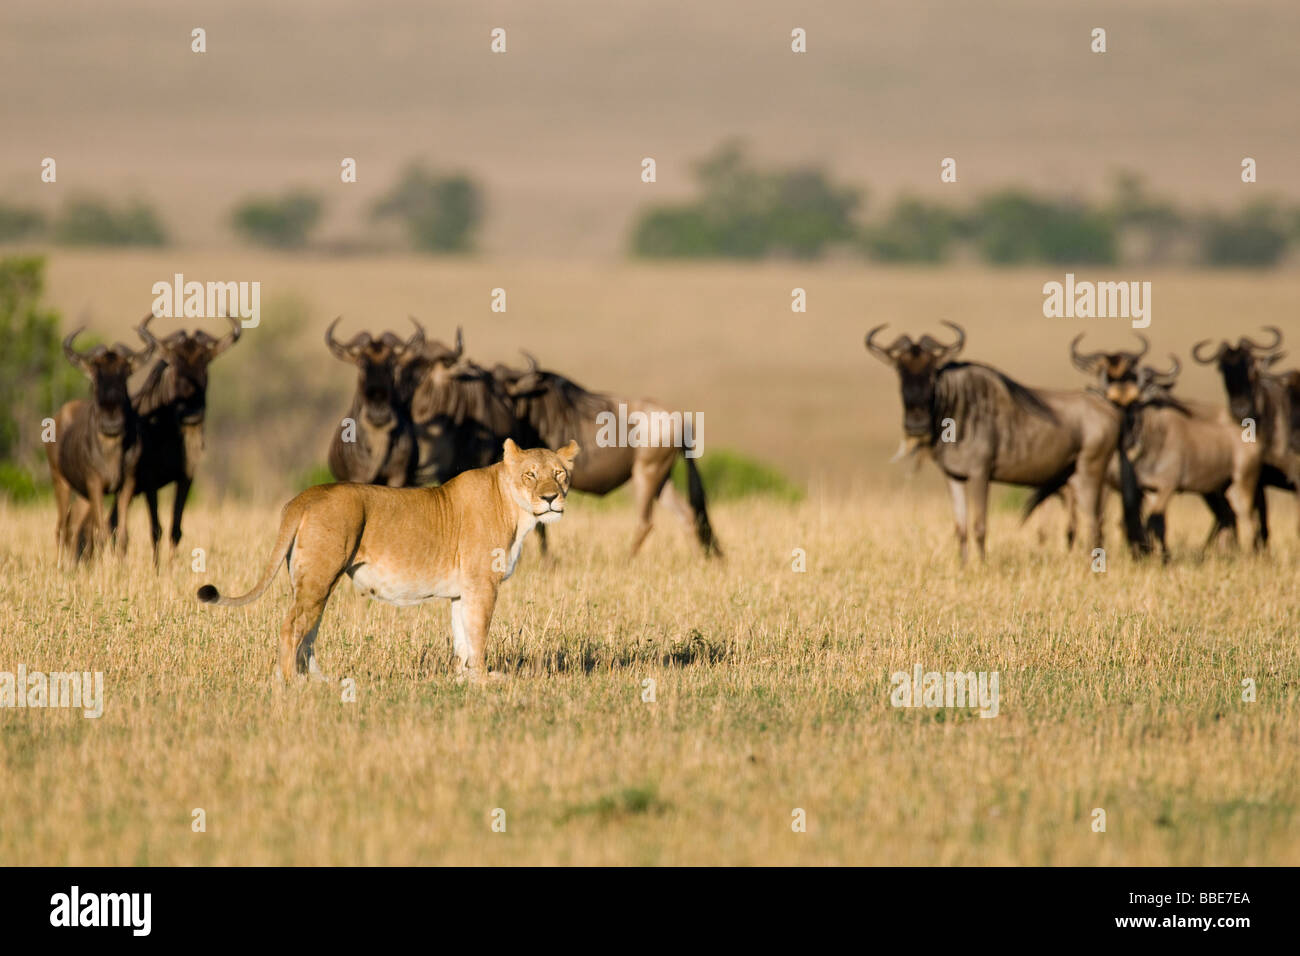 Troupeau de gnous bleu (Connochaetes taurinus) et d'une lionne (Panthera leo), Masai Mara National Reserve, Kenya, Afrique de l'Est Banque D'Images